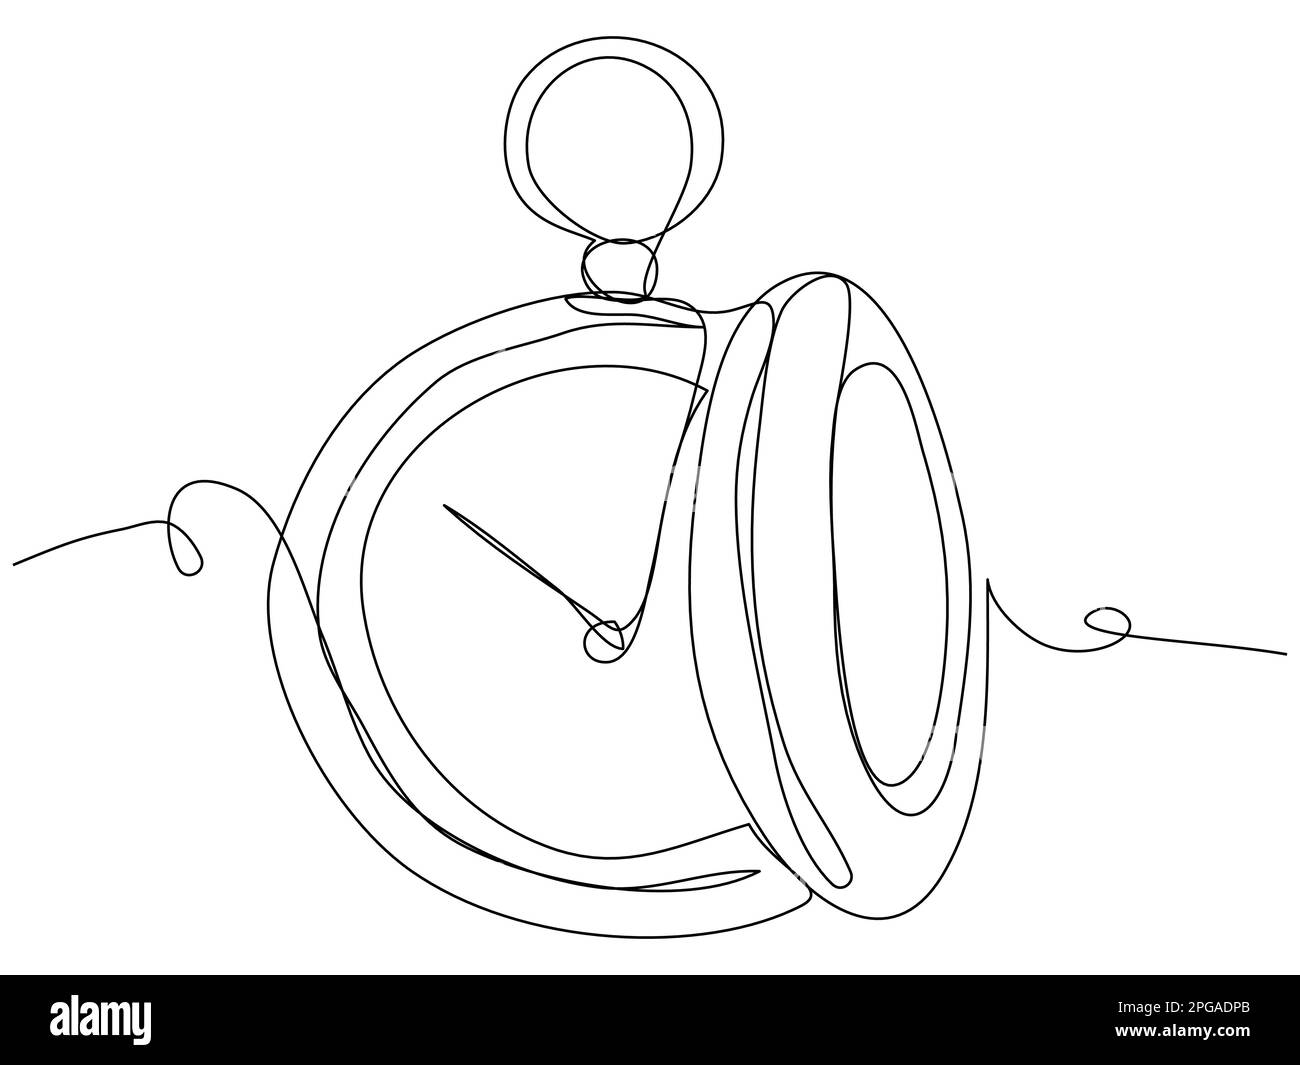 Orologio tascabile a una riga su sfondo bianco. Immagine concettuale del tempo. Illustrazione vettoriale stock con tratto modificabile. Illustrazione Vettoriale